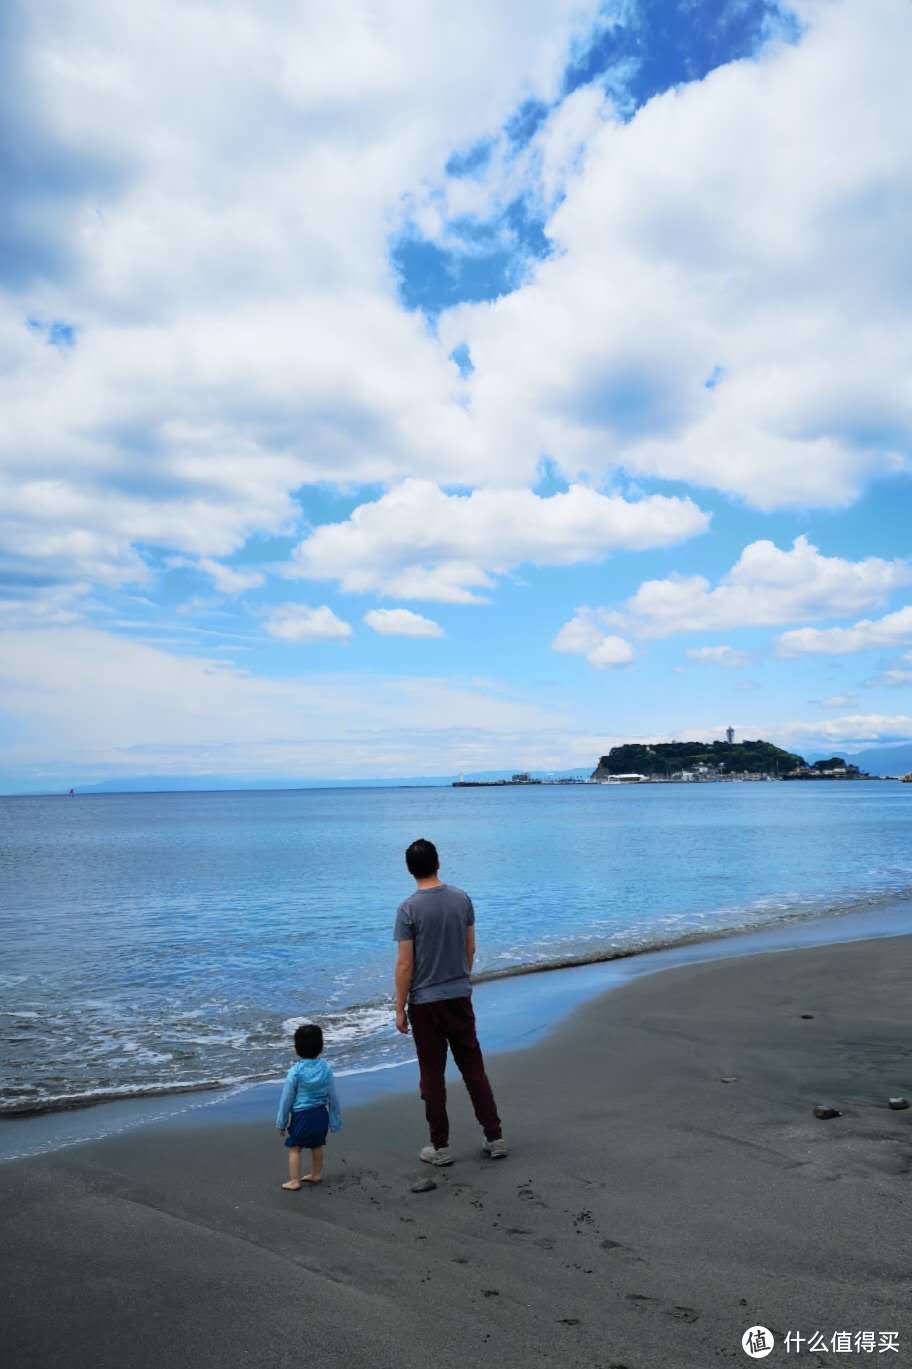 我带着孩子老婆来到车站前的沙滩玩耍，远处就是江之岛，这里真的是摄影极佳的位置。